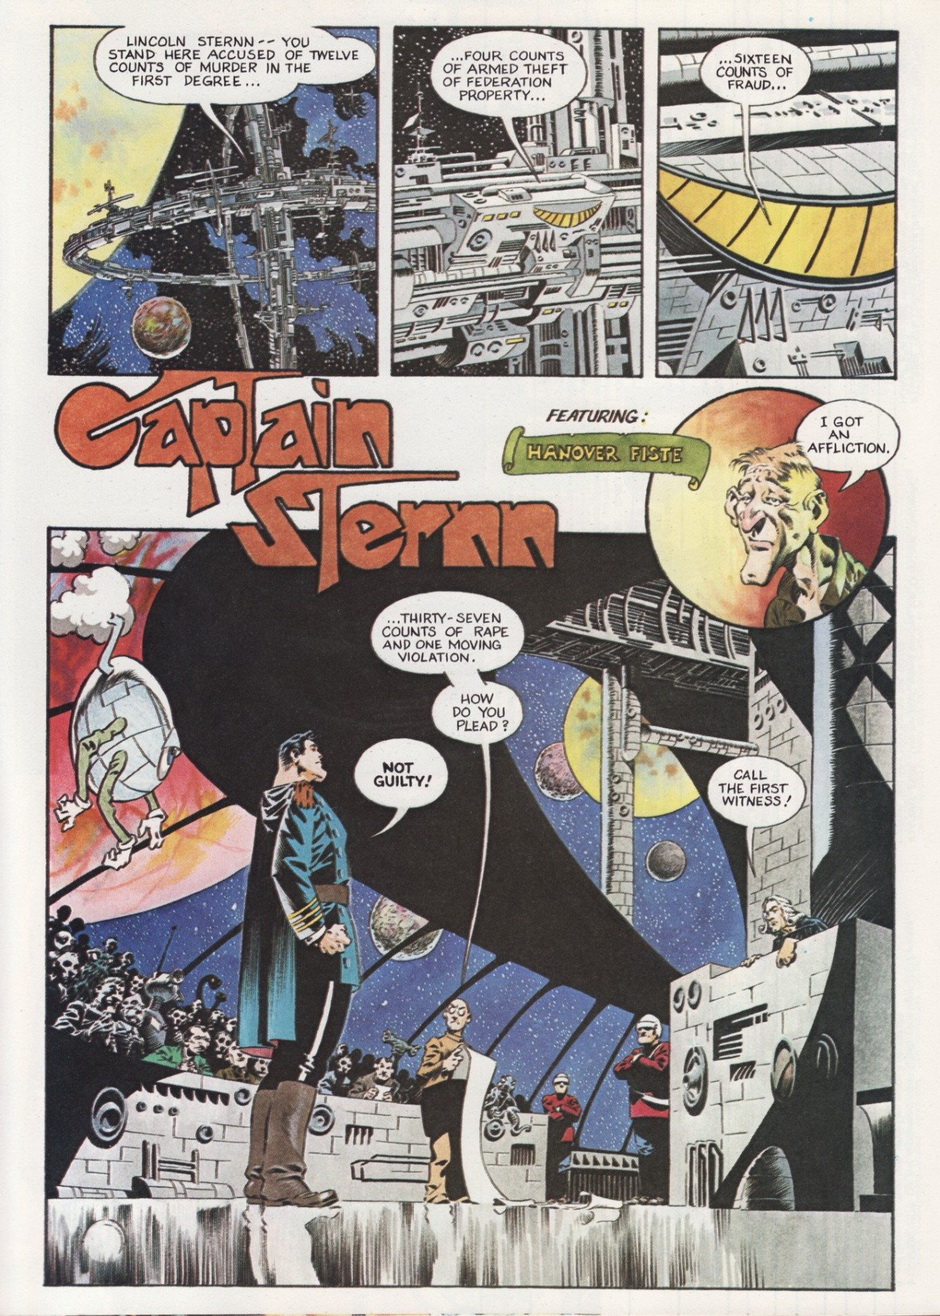 Captain Sternn by Berni Wrightson (Heavy Metal 1992)-1.jpg